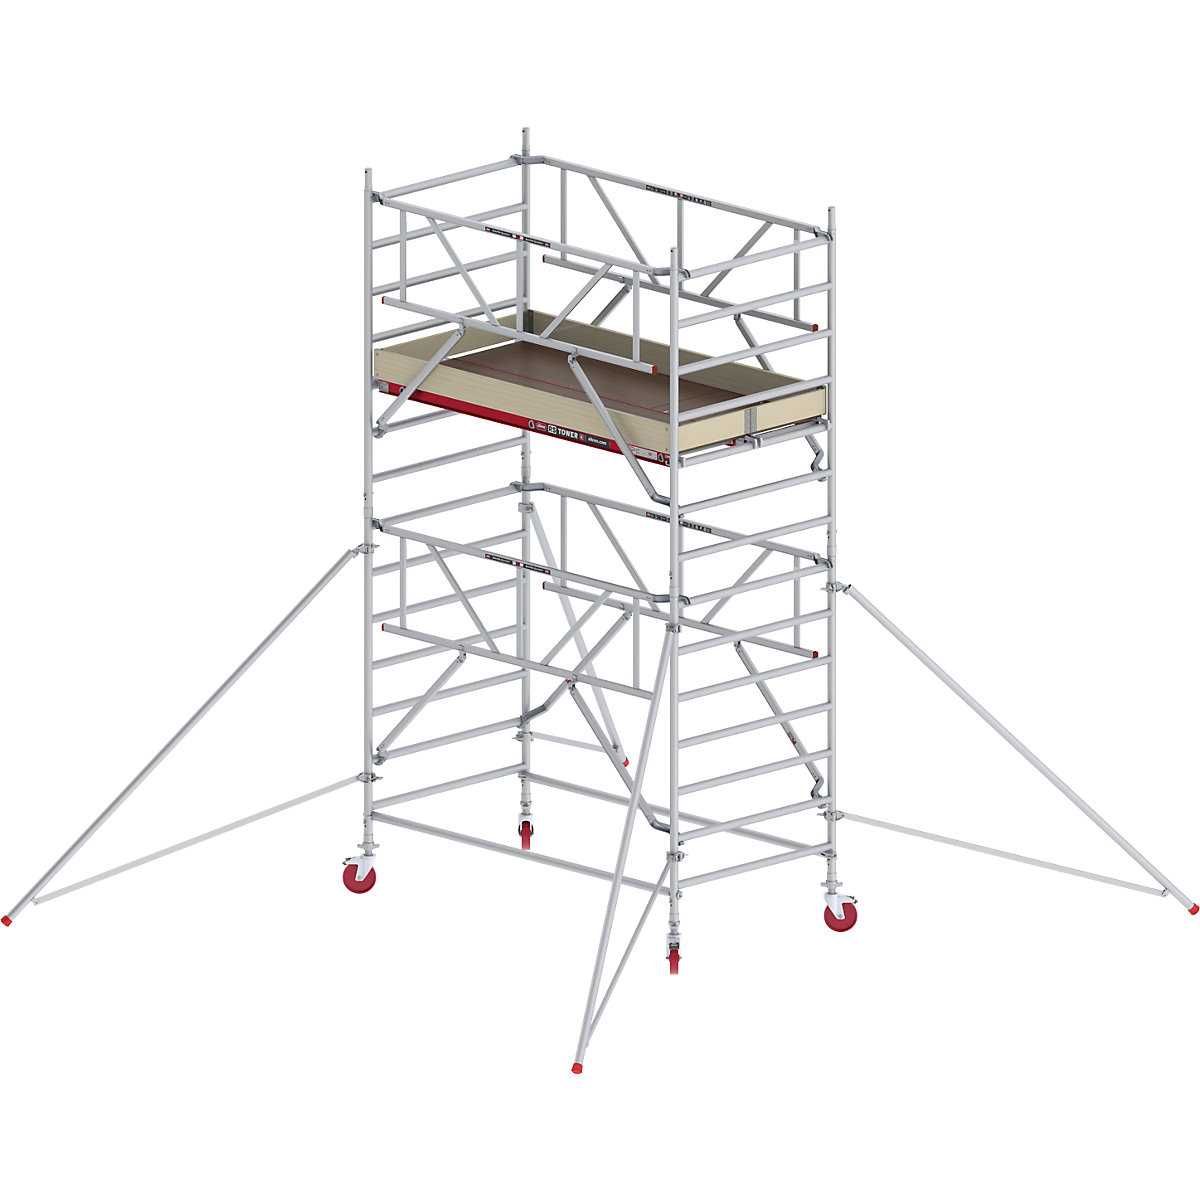 Schelă mobilă RS TOWER 42 lată cu Safe-Quick® – Altrex, platformă din lemn, lungime 2,45 m, înălțime de lucru 5,20 m-6